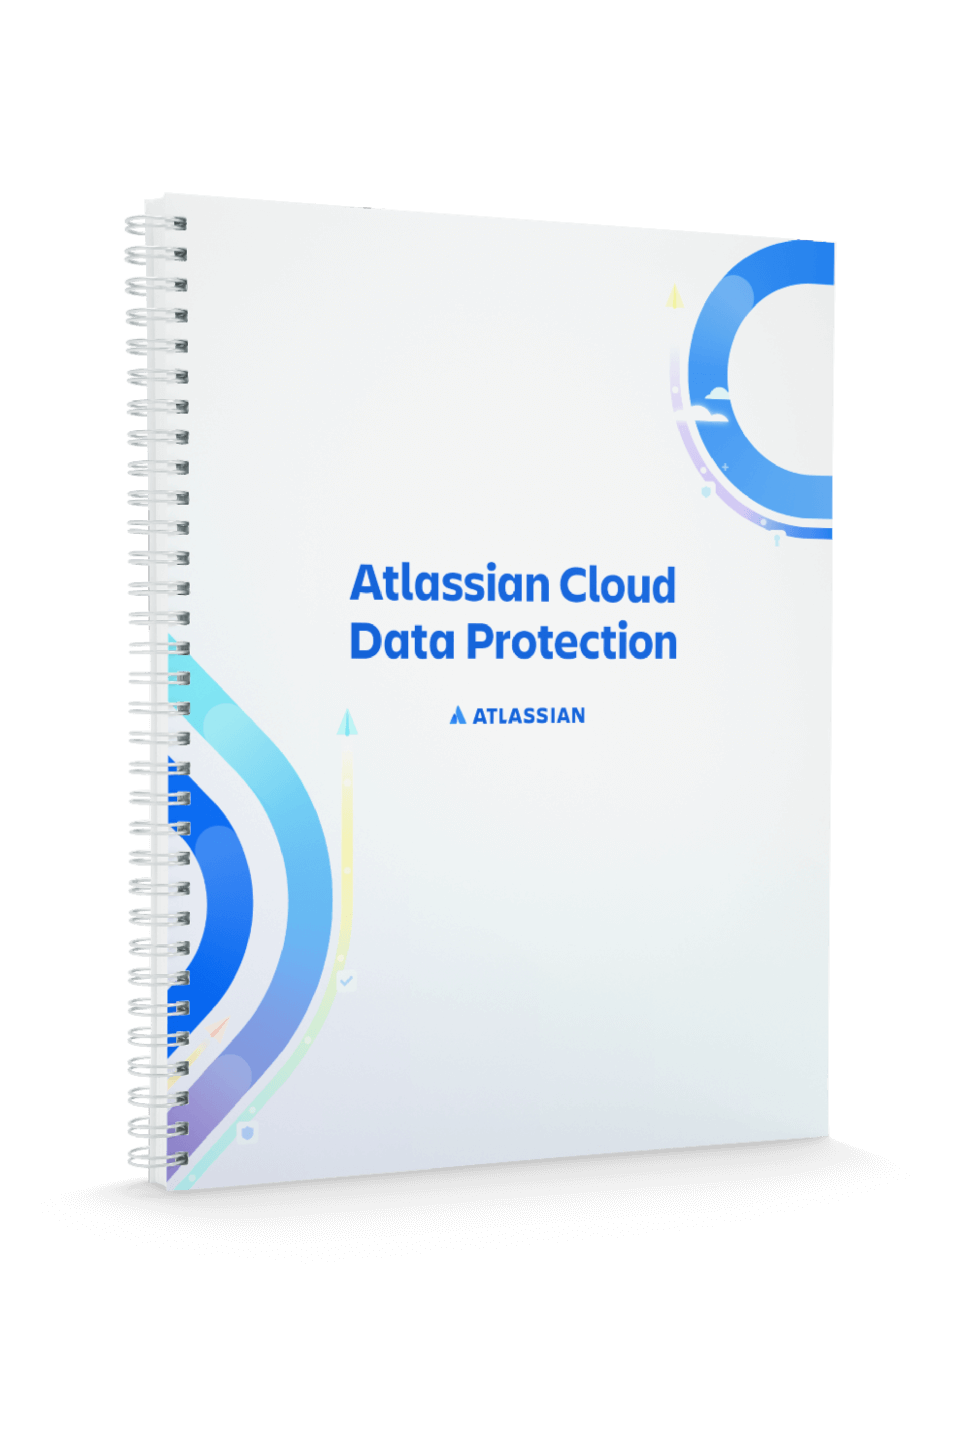 Couverture de protection des données Atlassian Cloud